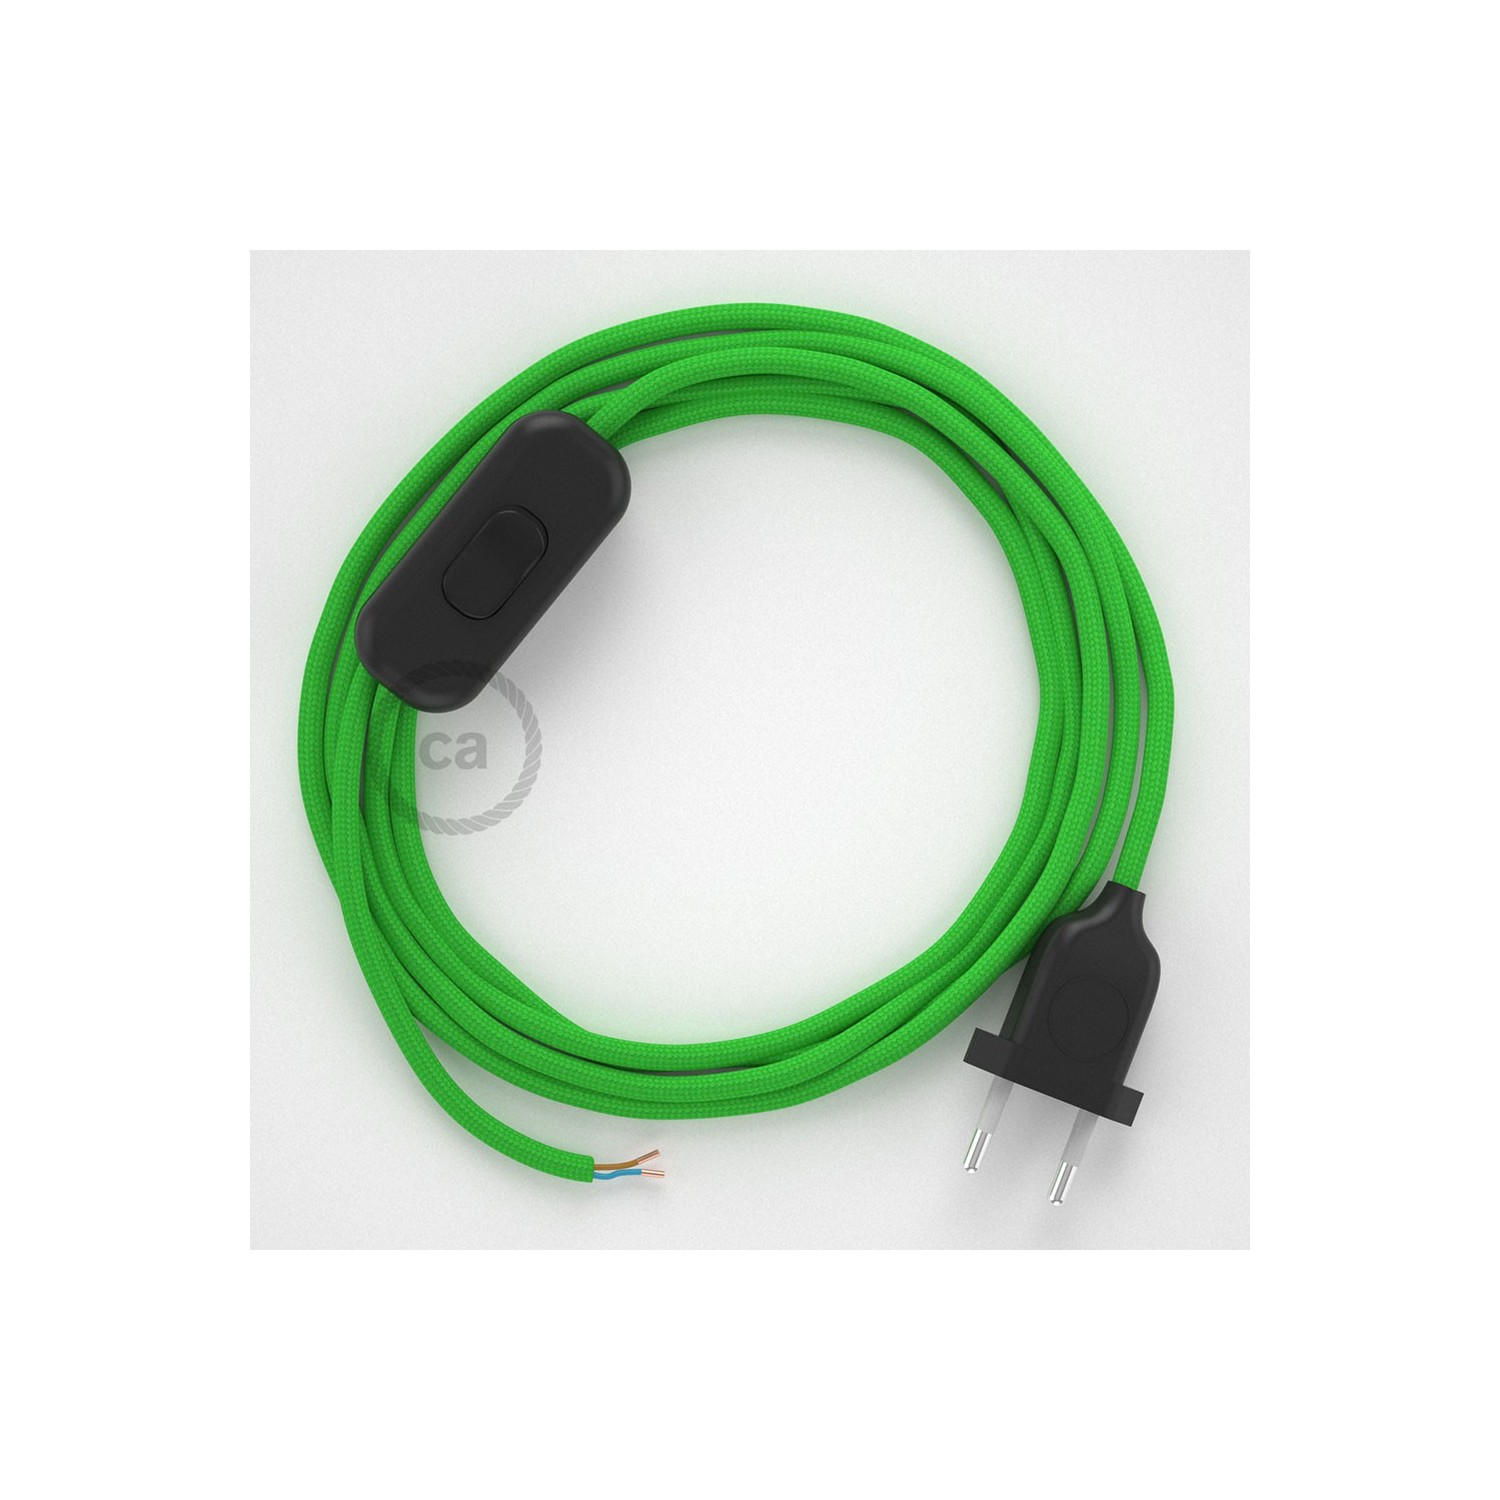 Komplet s prekidačem RM18 Limeta Zeleni - 1,8 m. odaberite boju prekidača i utikača!